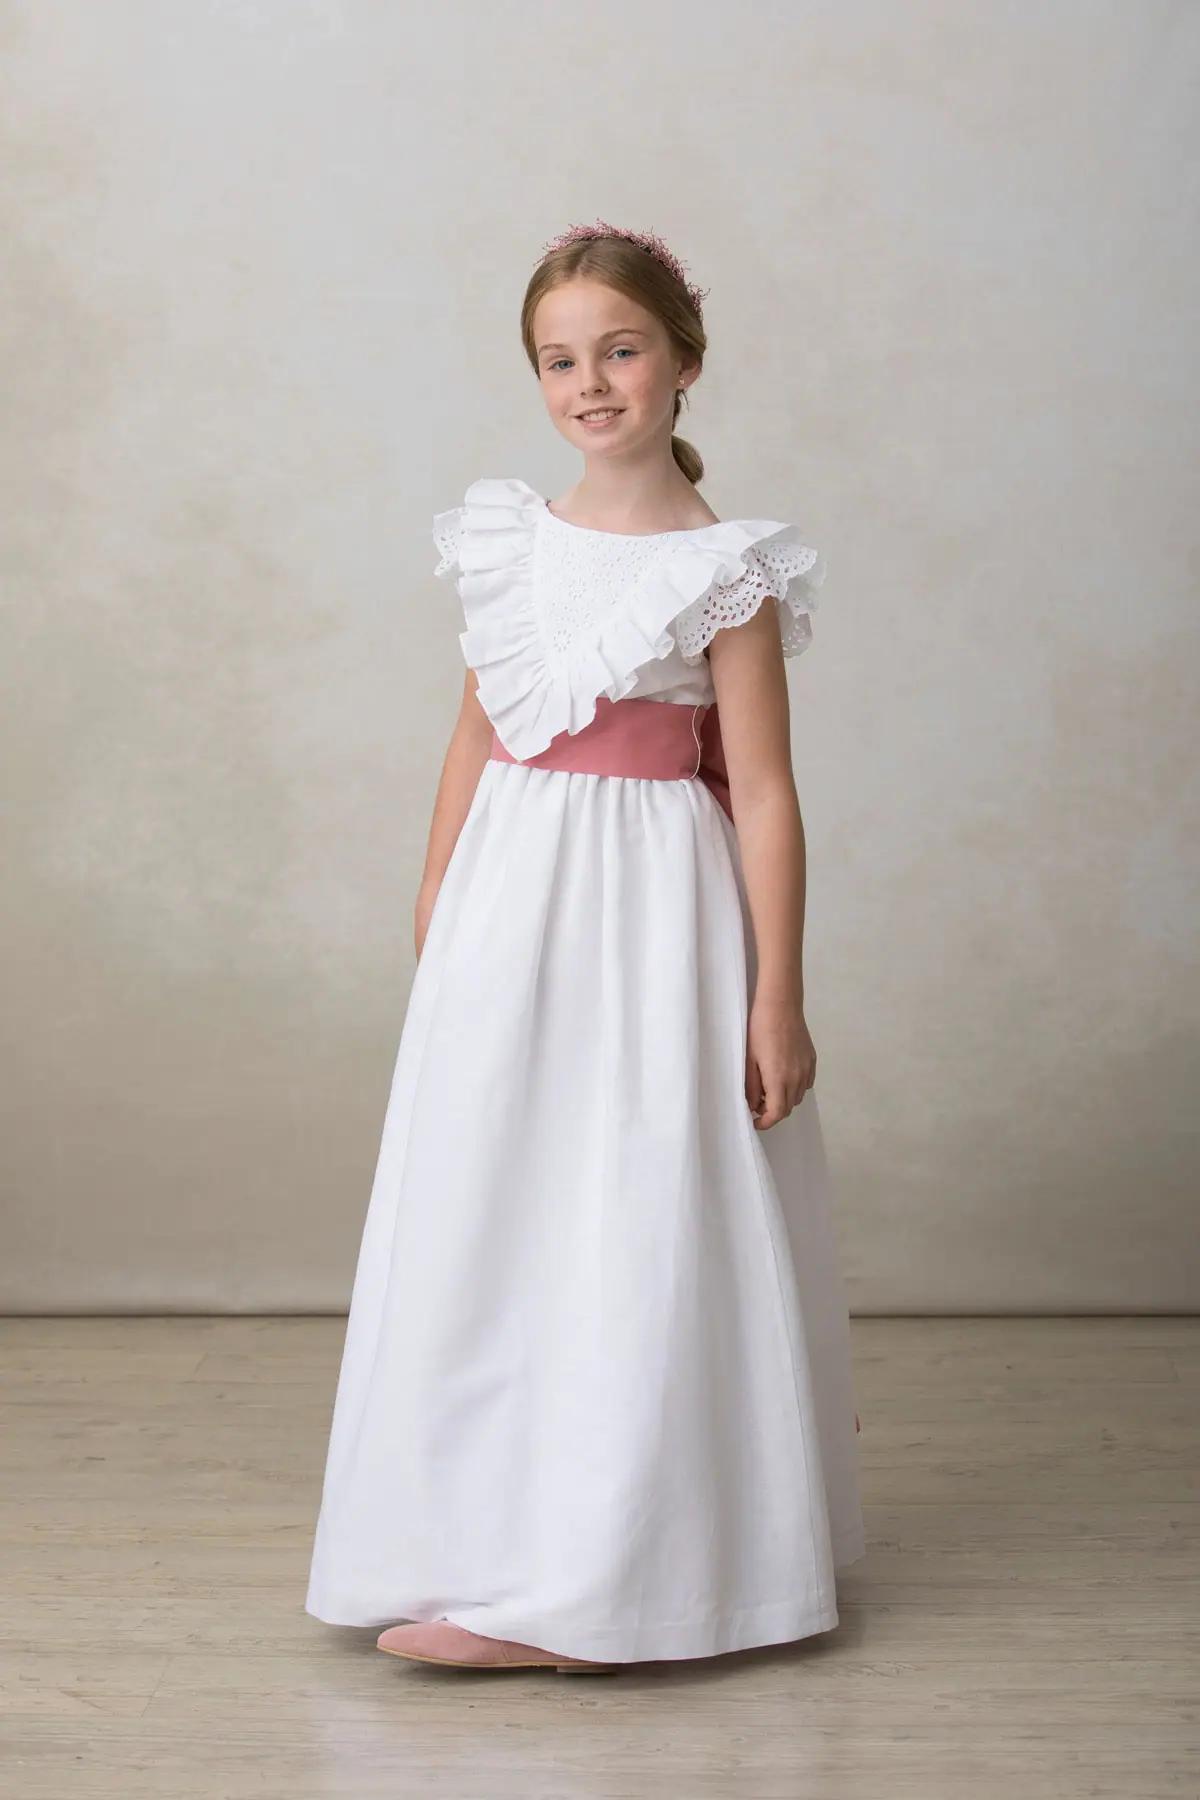 ropa para primera comunion niña - Cómo se debe vestir una niña para la primera comunión